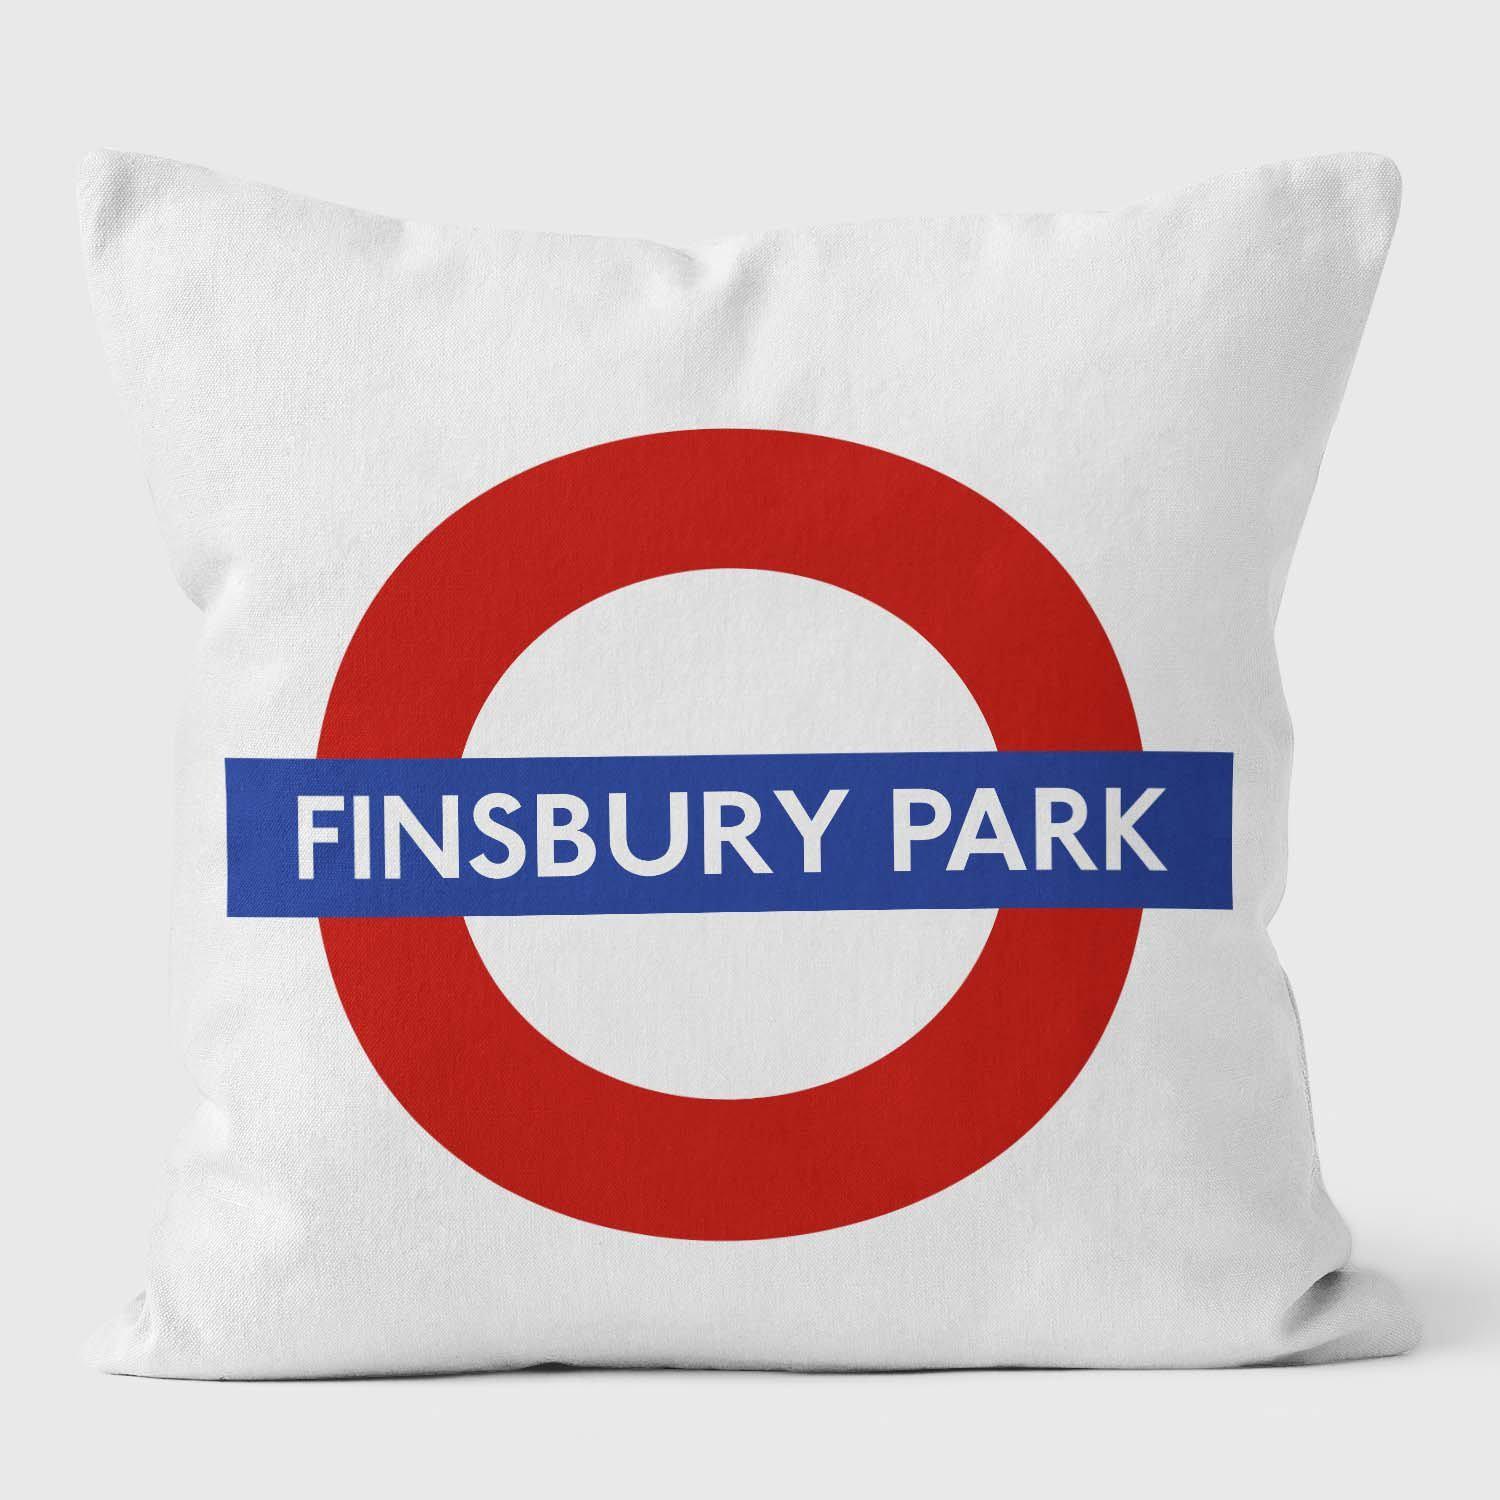 Finsbury Park London Underground Tube Station Roundel Cushion - Handmade Cushions UK - WeLoveCushions